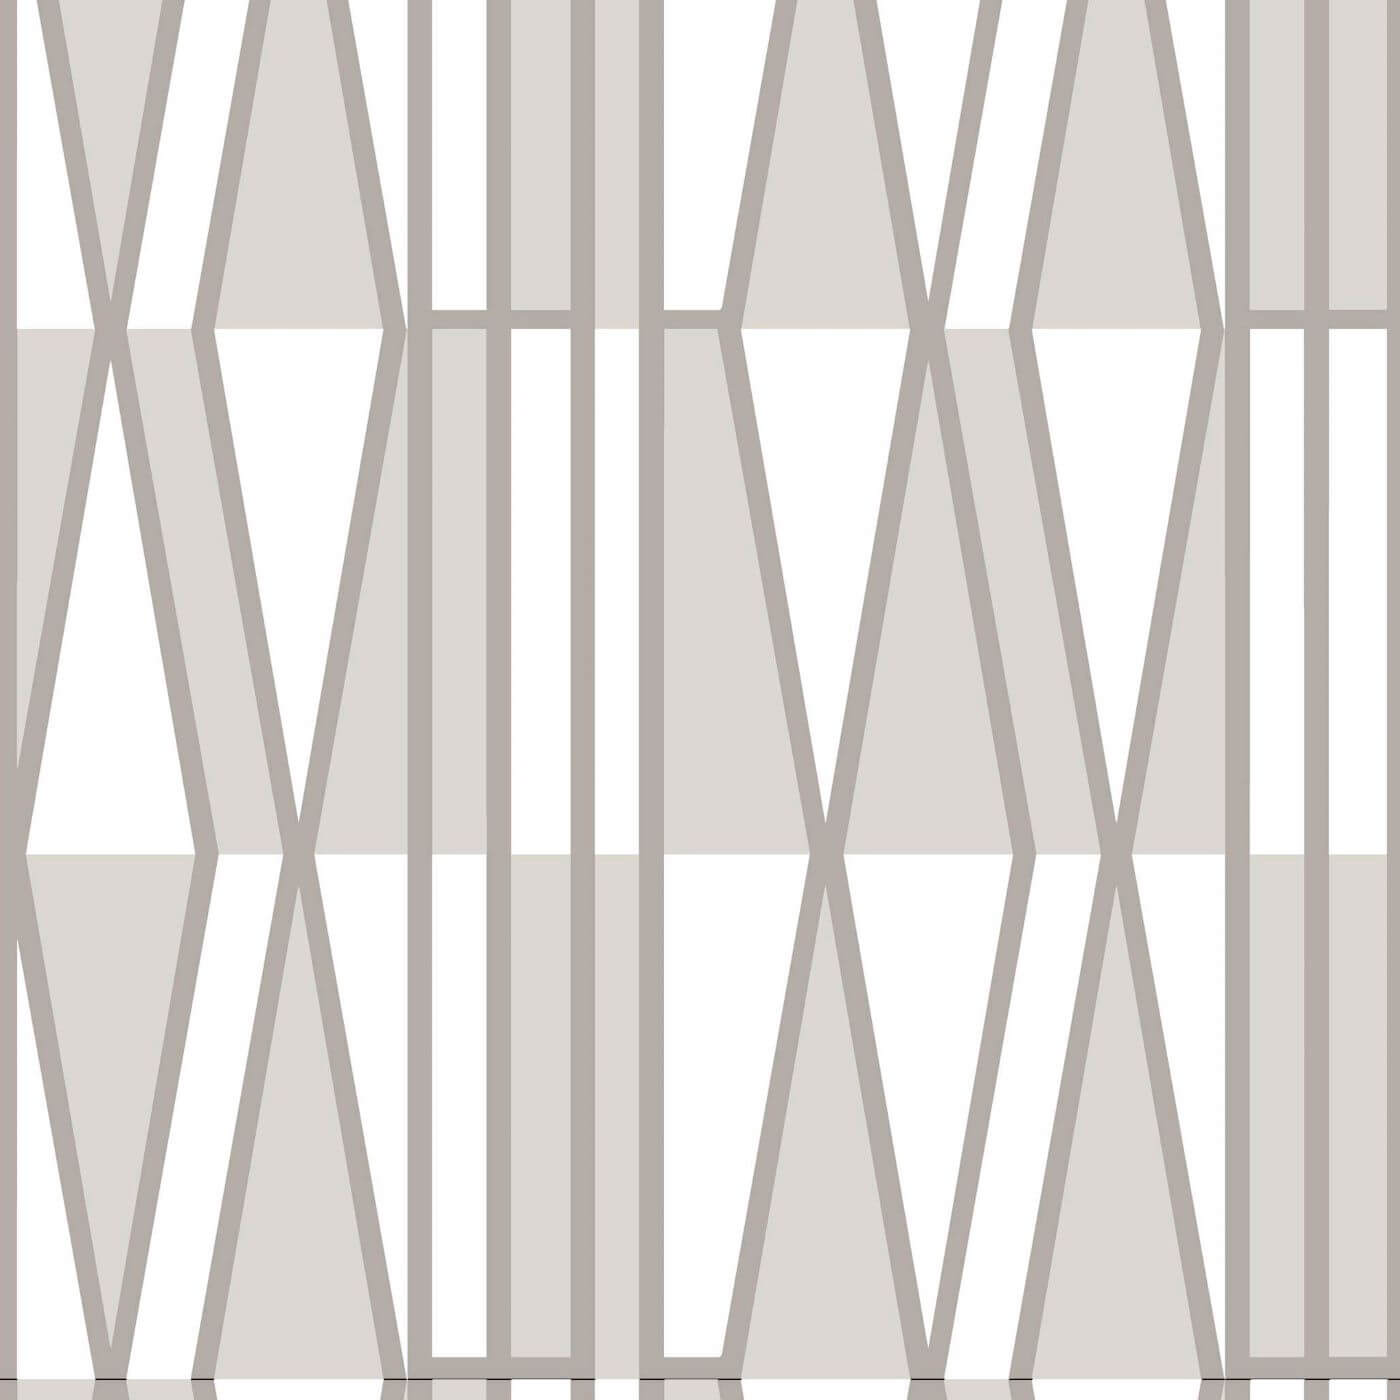 Zasłony w geometryczne wzory Vallgard. Fragment wzoru nowoczesnej geometrycznej zasłony w kolory szare i białe. Skandynawskie wzornictwo